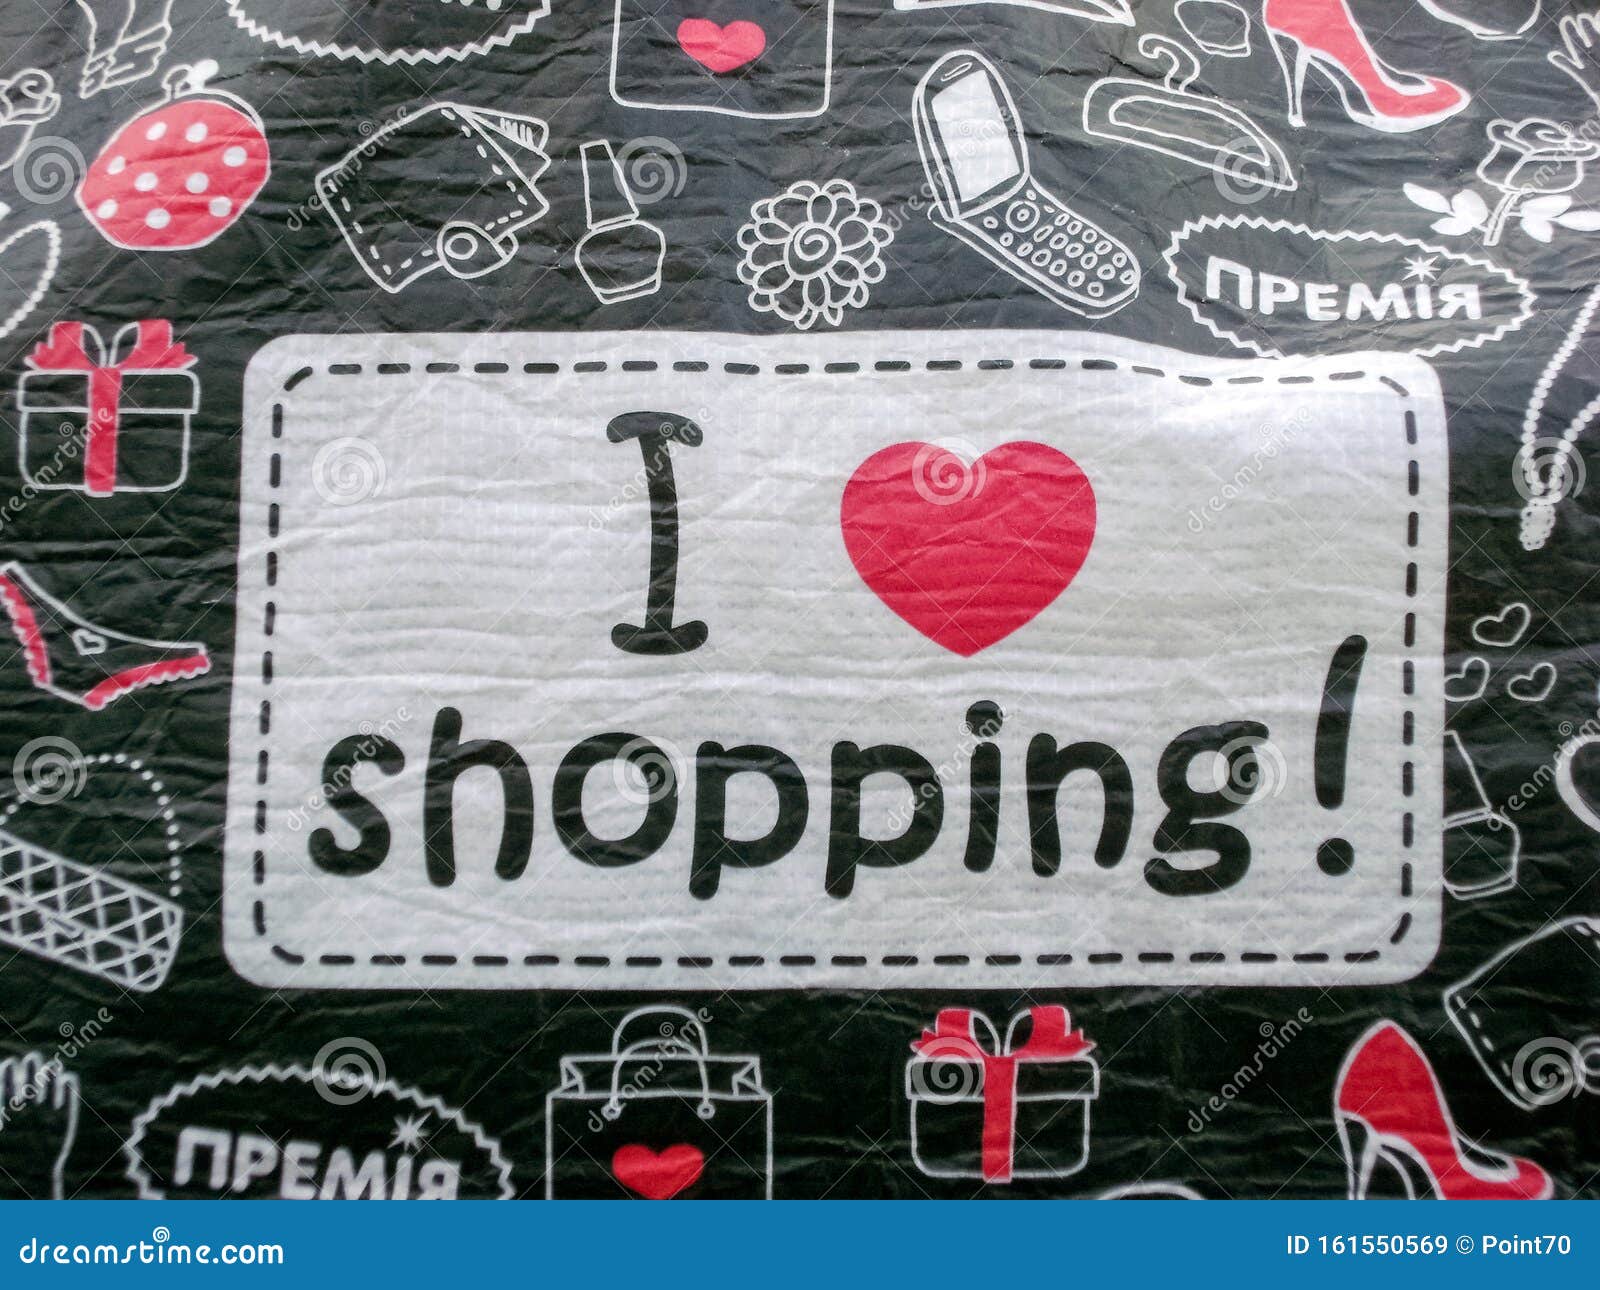 Я люблю шоппинг картинка. Love is шоппинг. Shopping is my Cardio надпись. Фото l Love you shopping надпись.